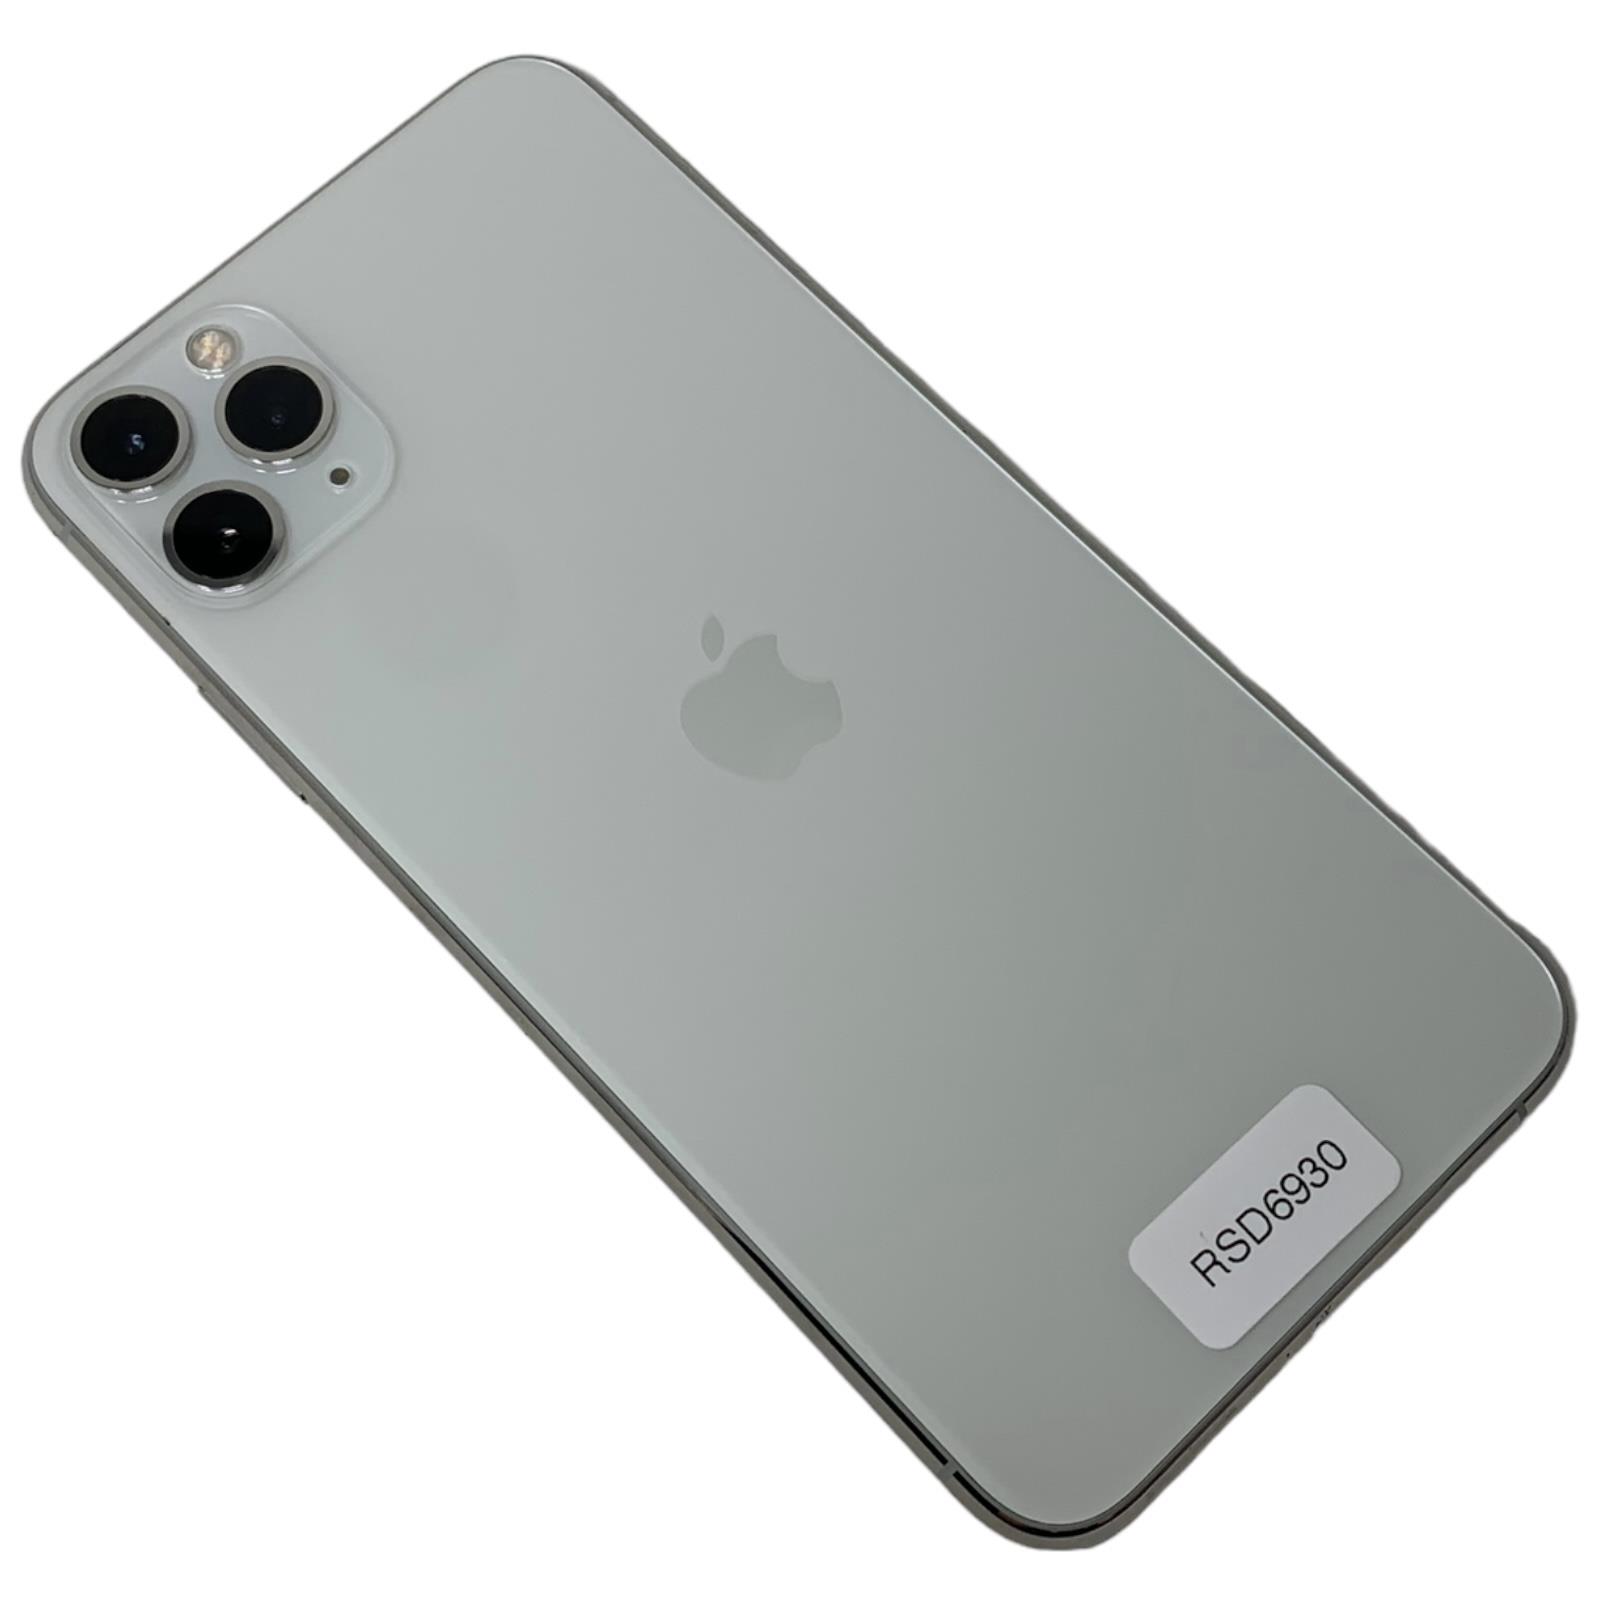 RSD6930 Apple iPhone 11 Pro Max 64Gb GR.A Gar.12M Fattura